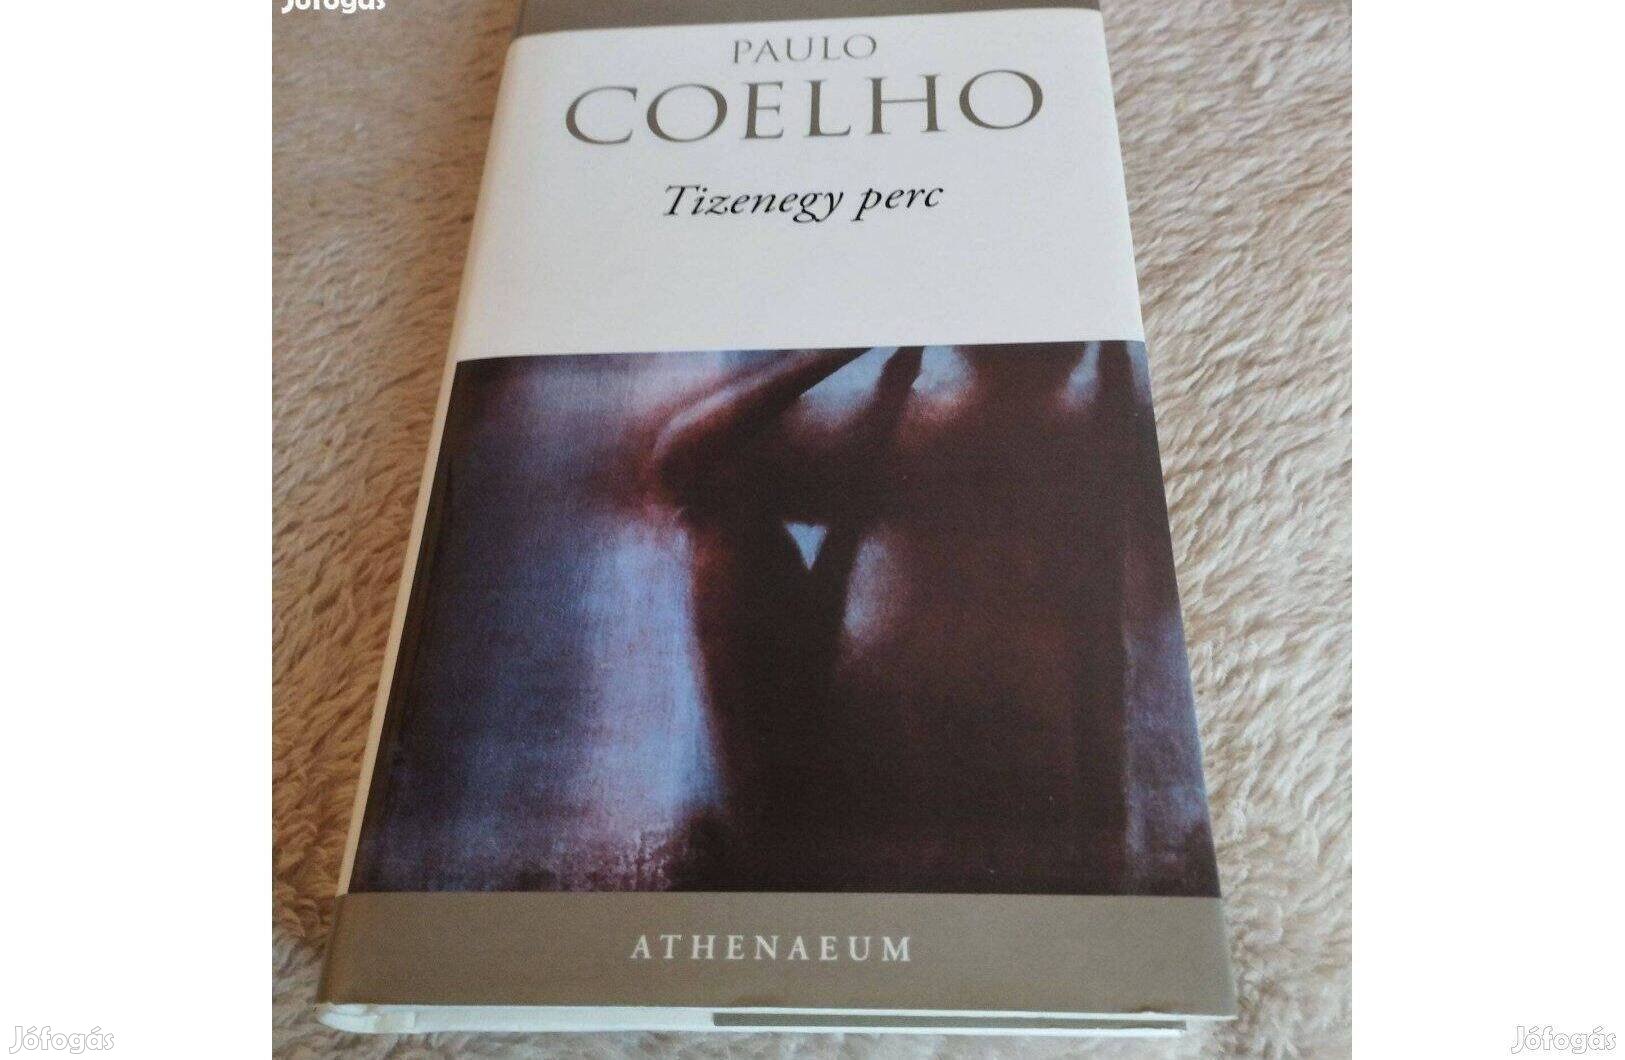 Paulo Coelho könyv Tizenegy perc